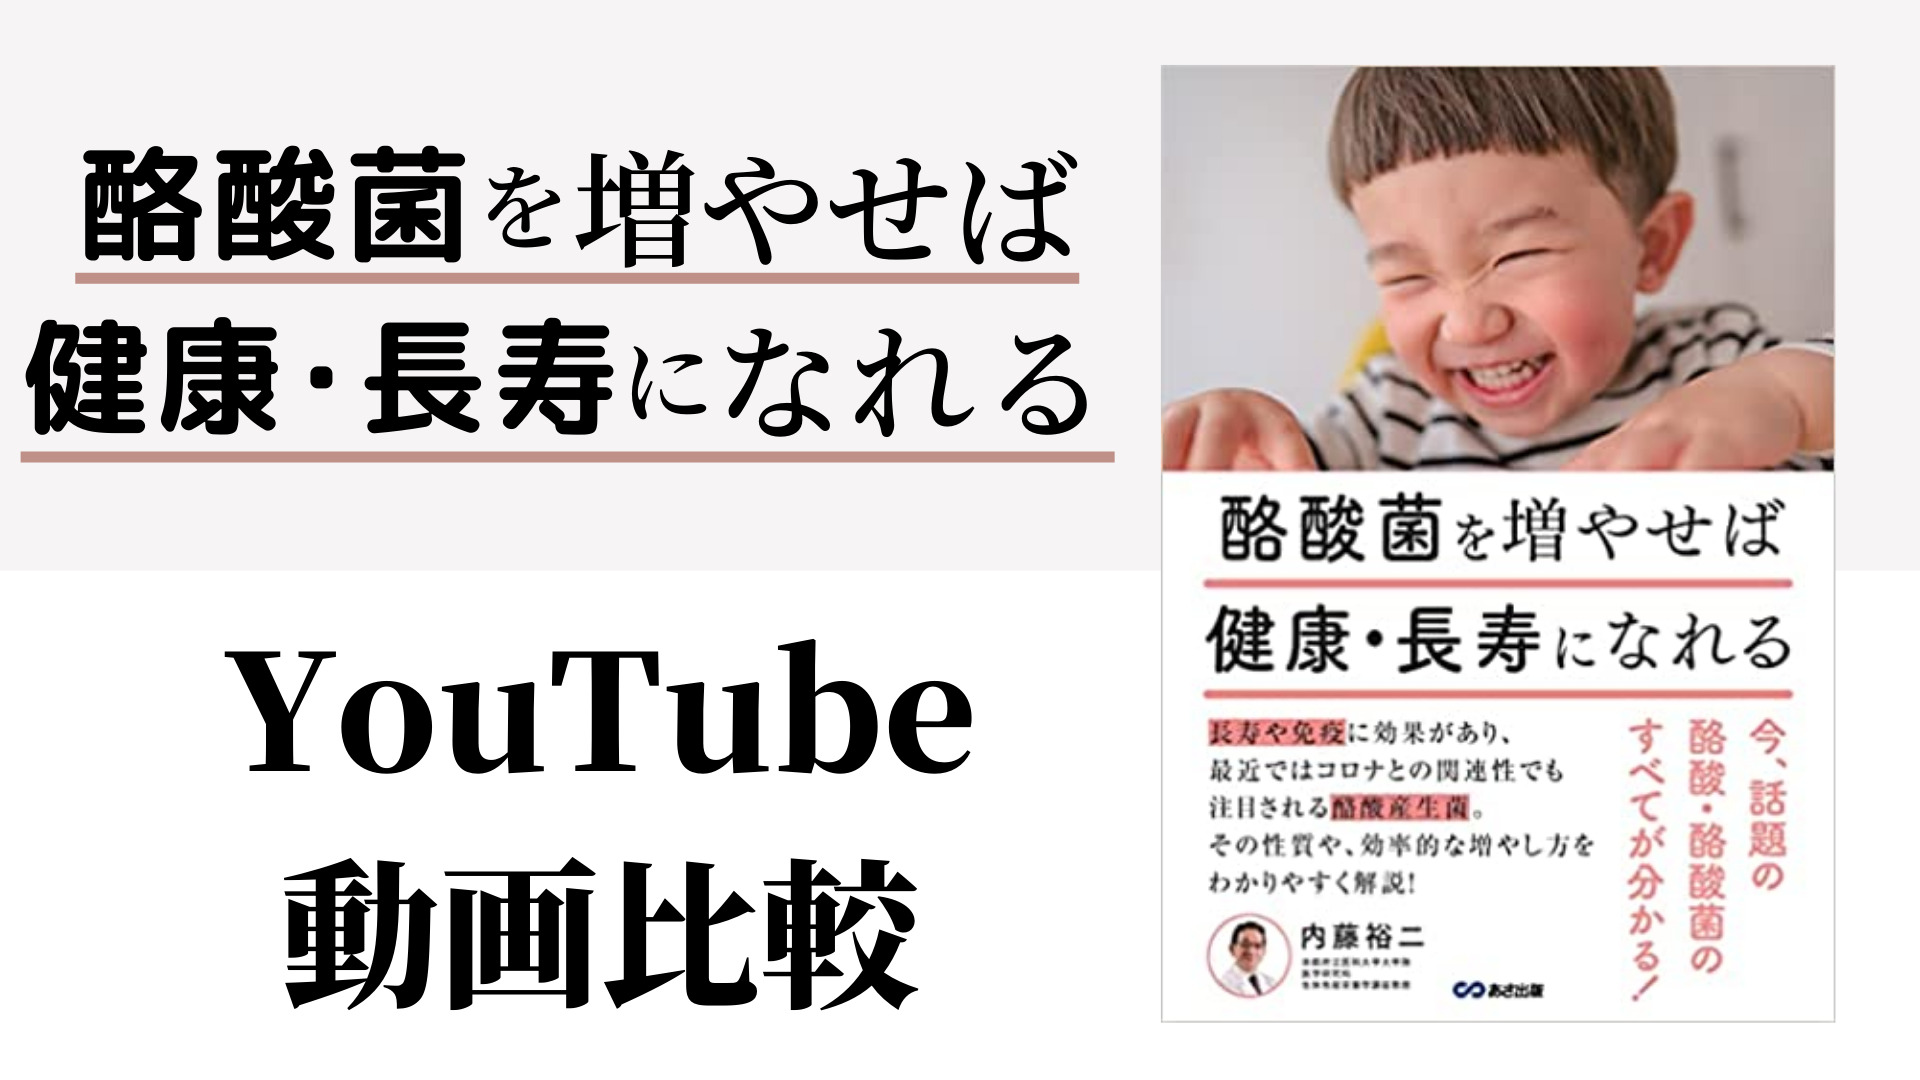 酪酸菌を増やせば健康・長寿になれる YouTube動画比較